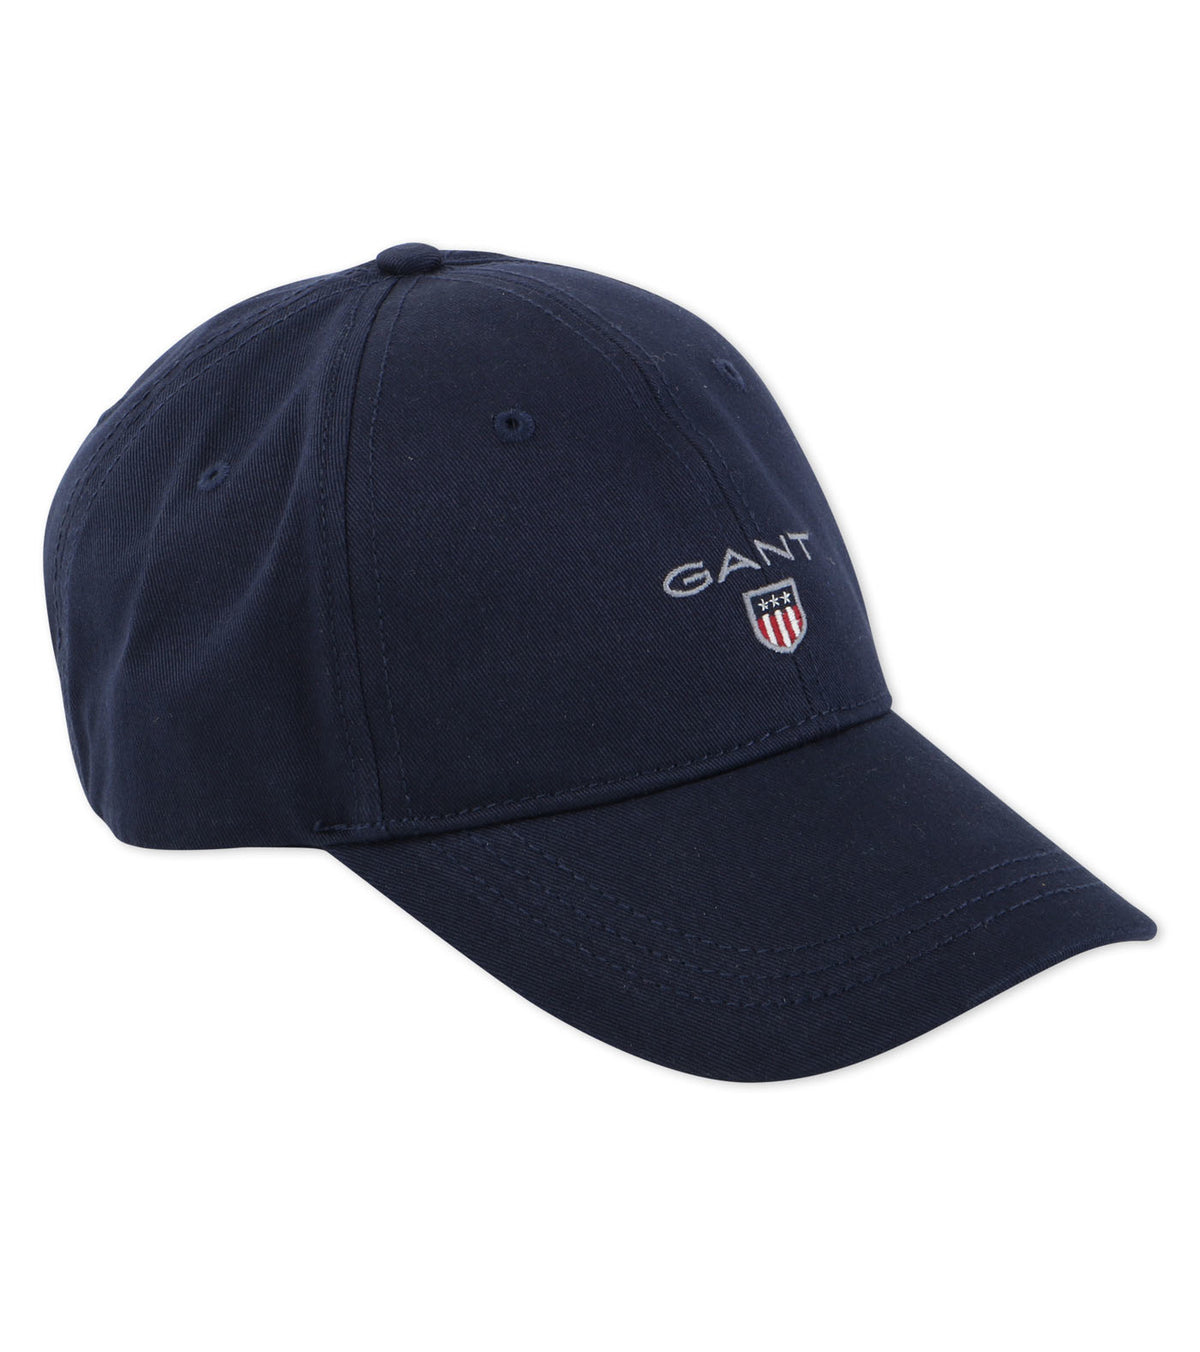 GANT BASIC CAP